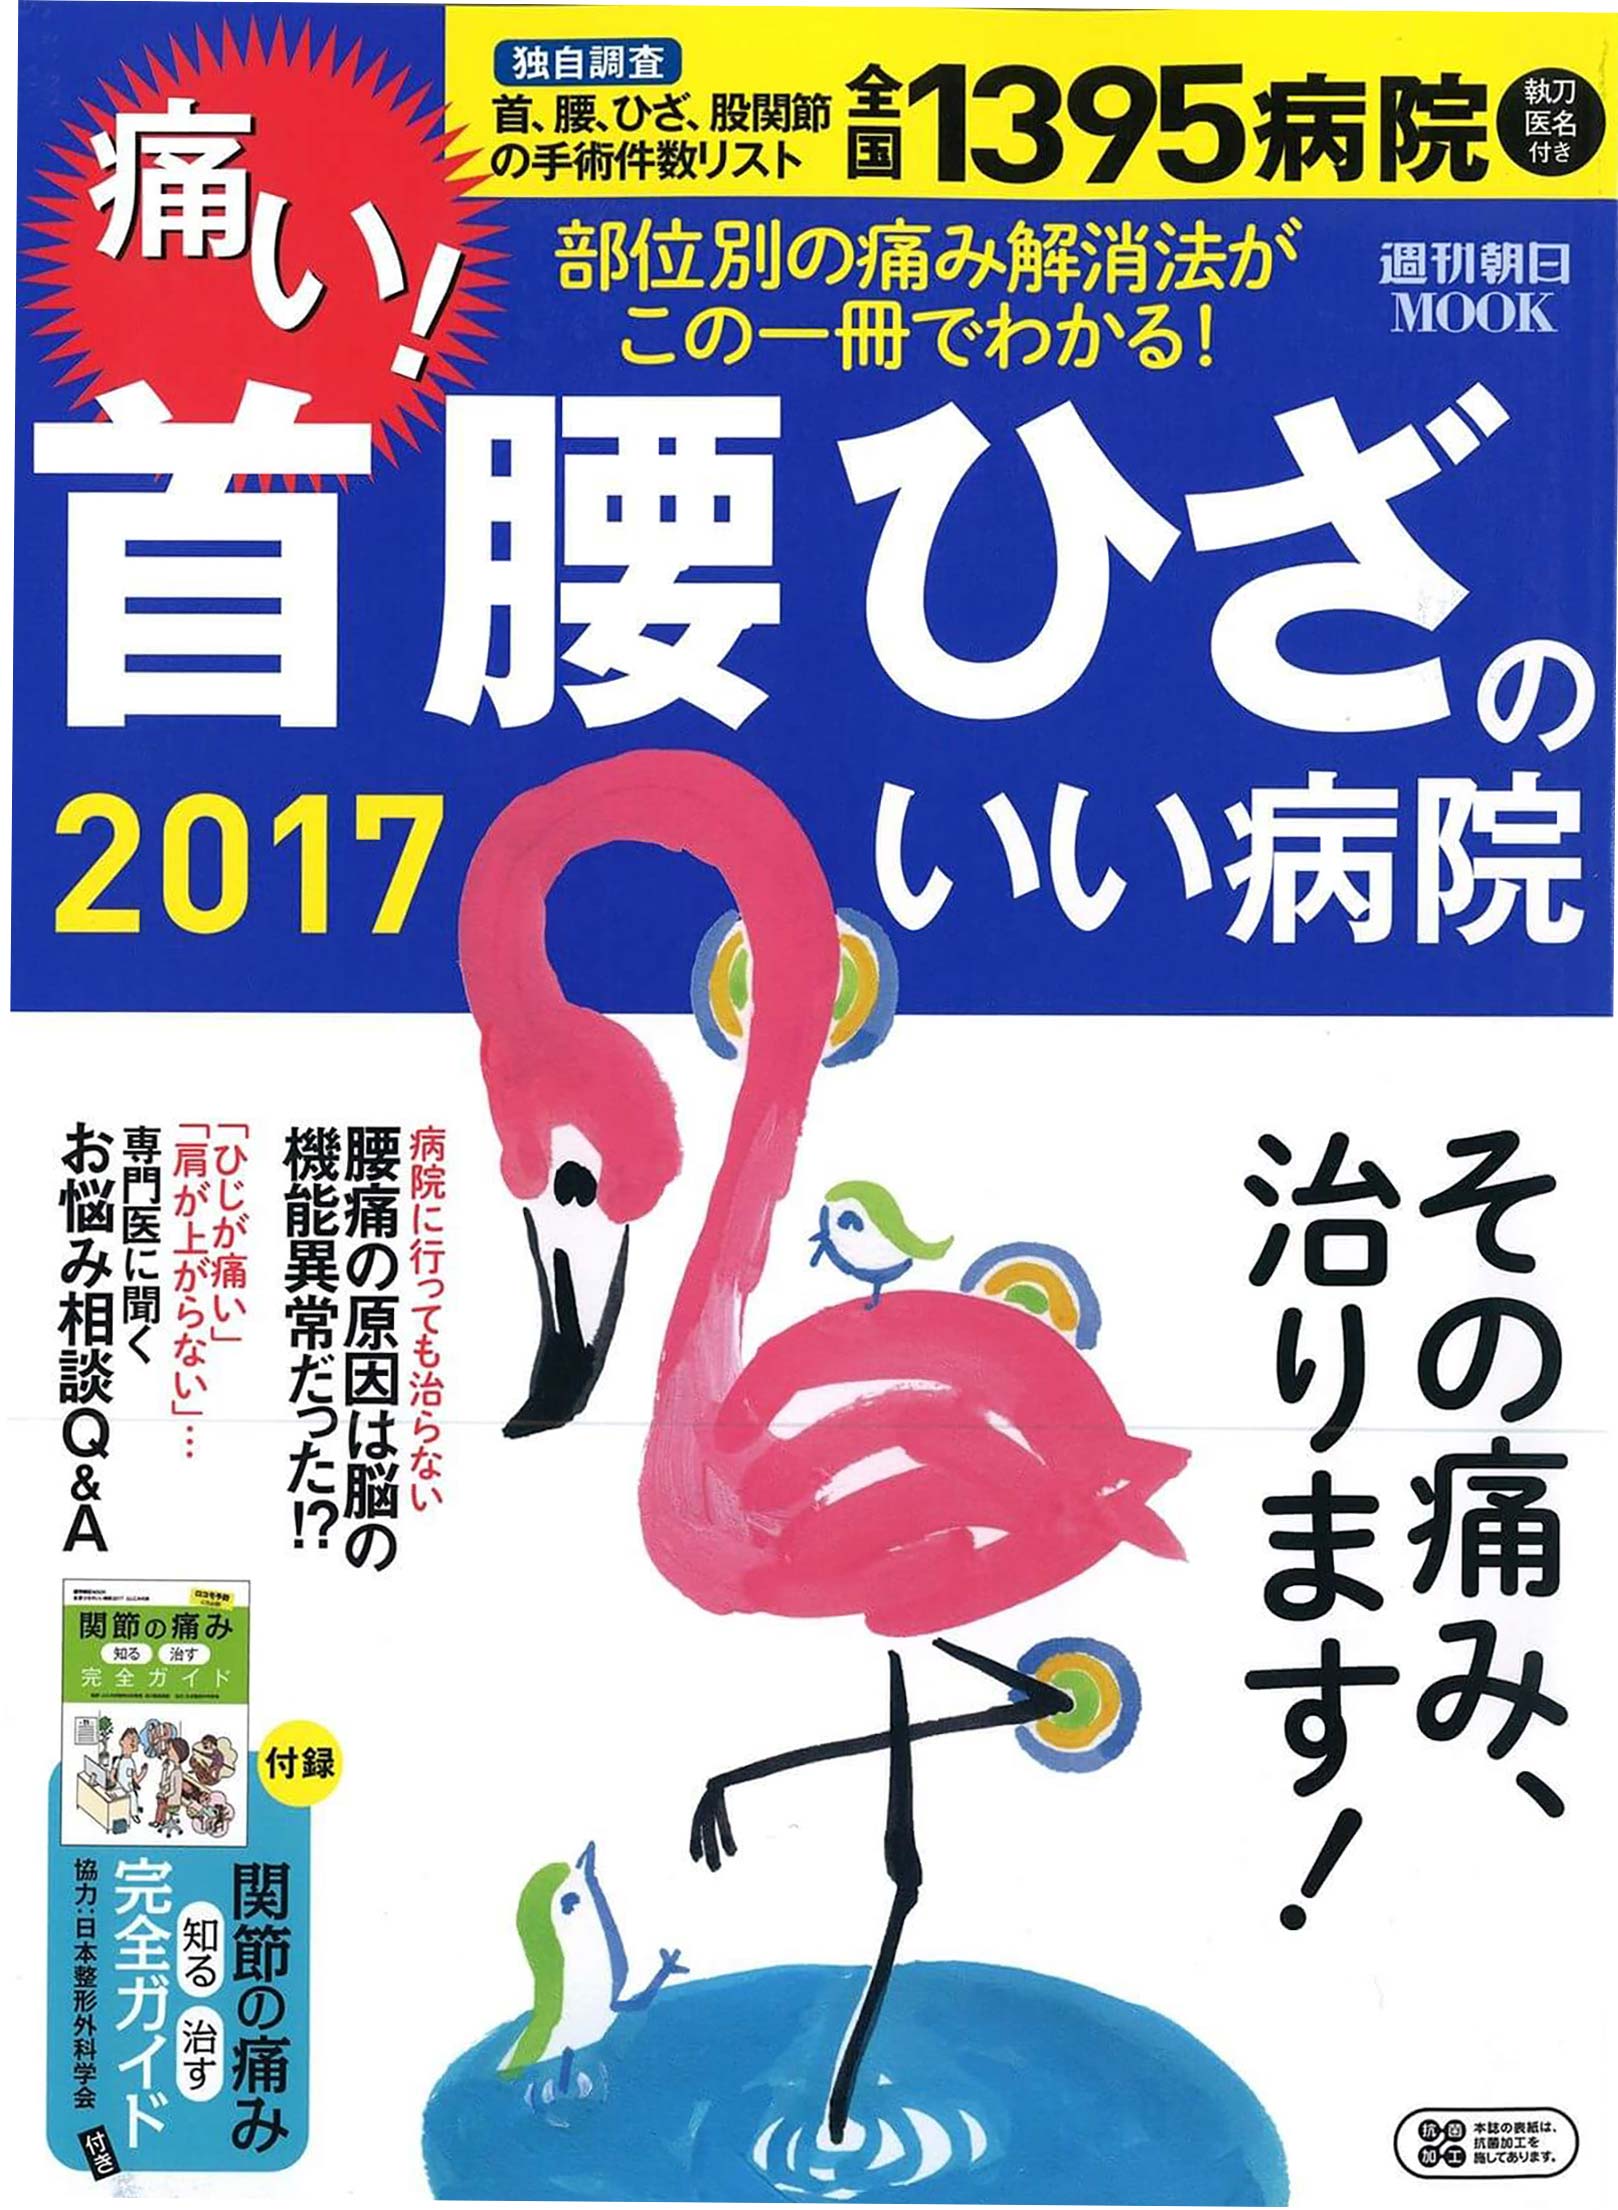 週刊朝日MOOK 首腰ひざのいい病院2017(表紙)